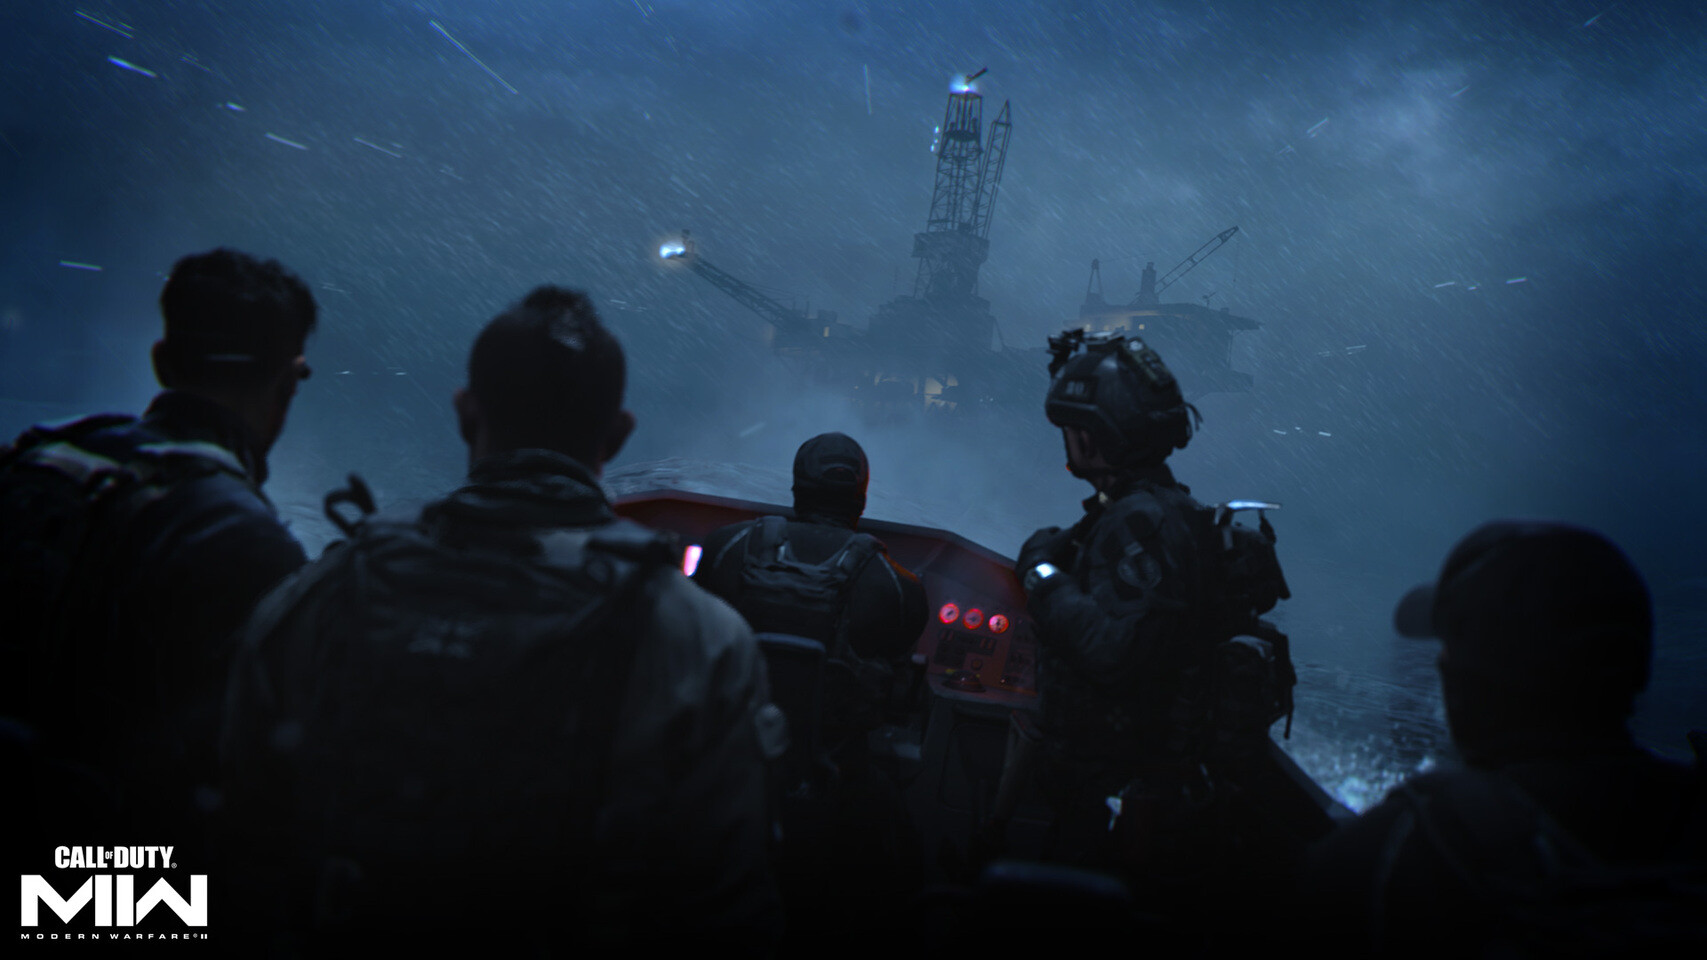 Call of Duty: Modern Warfare II Announced - returnal